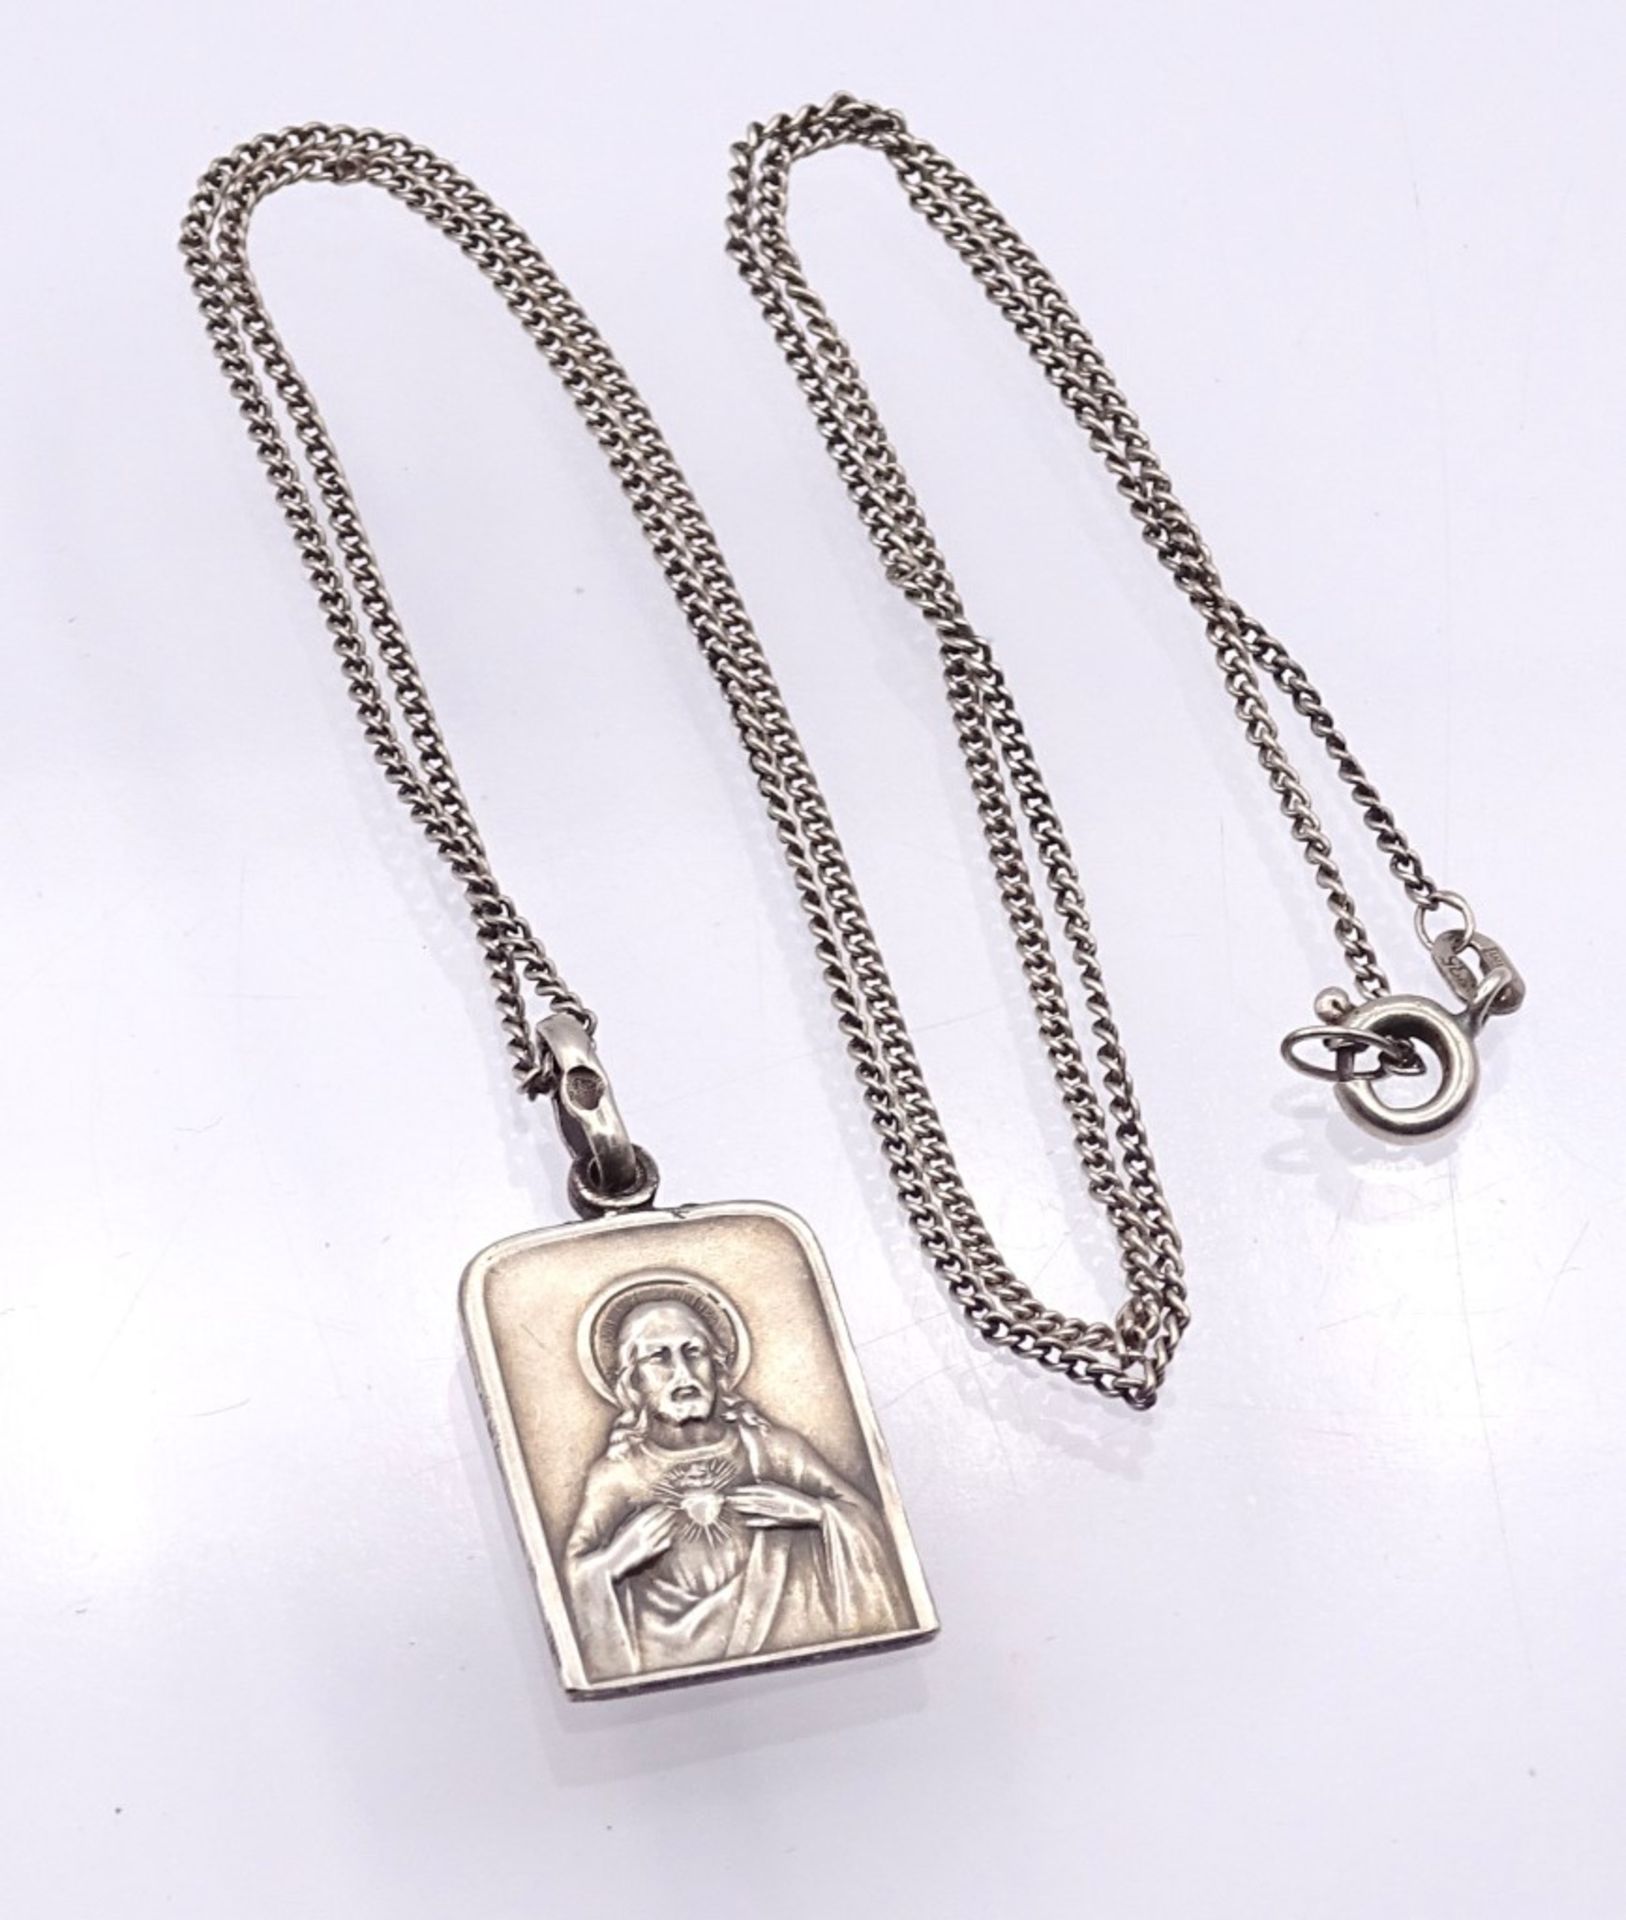 Halskette mit Anhänger mit religiöser Darstellung,Silber 800 und Kette 835,ges.Gew.4,3gr., Kette - Bild 2 aus 2